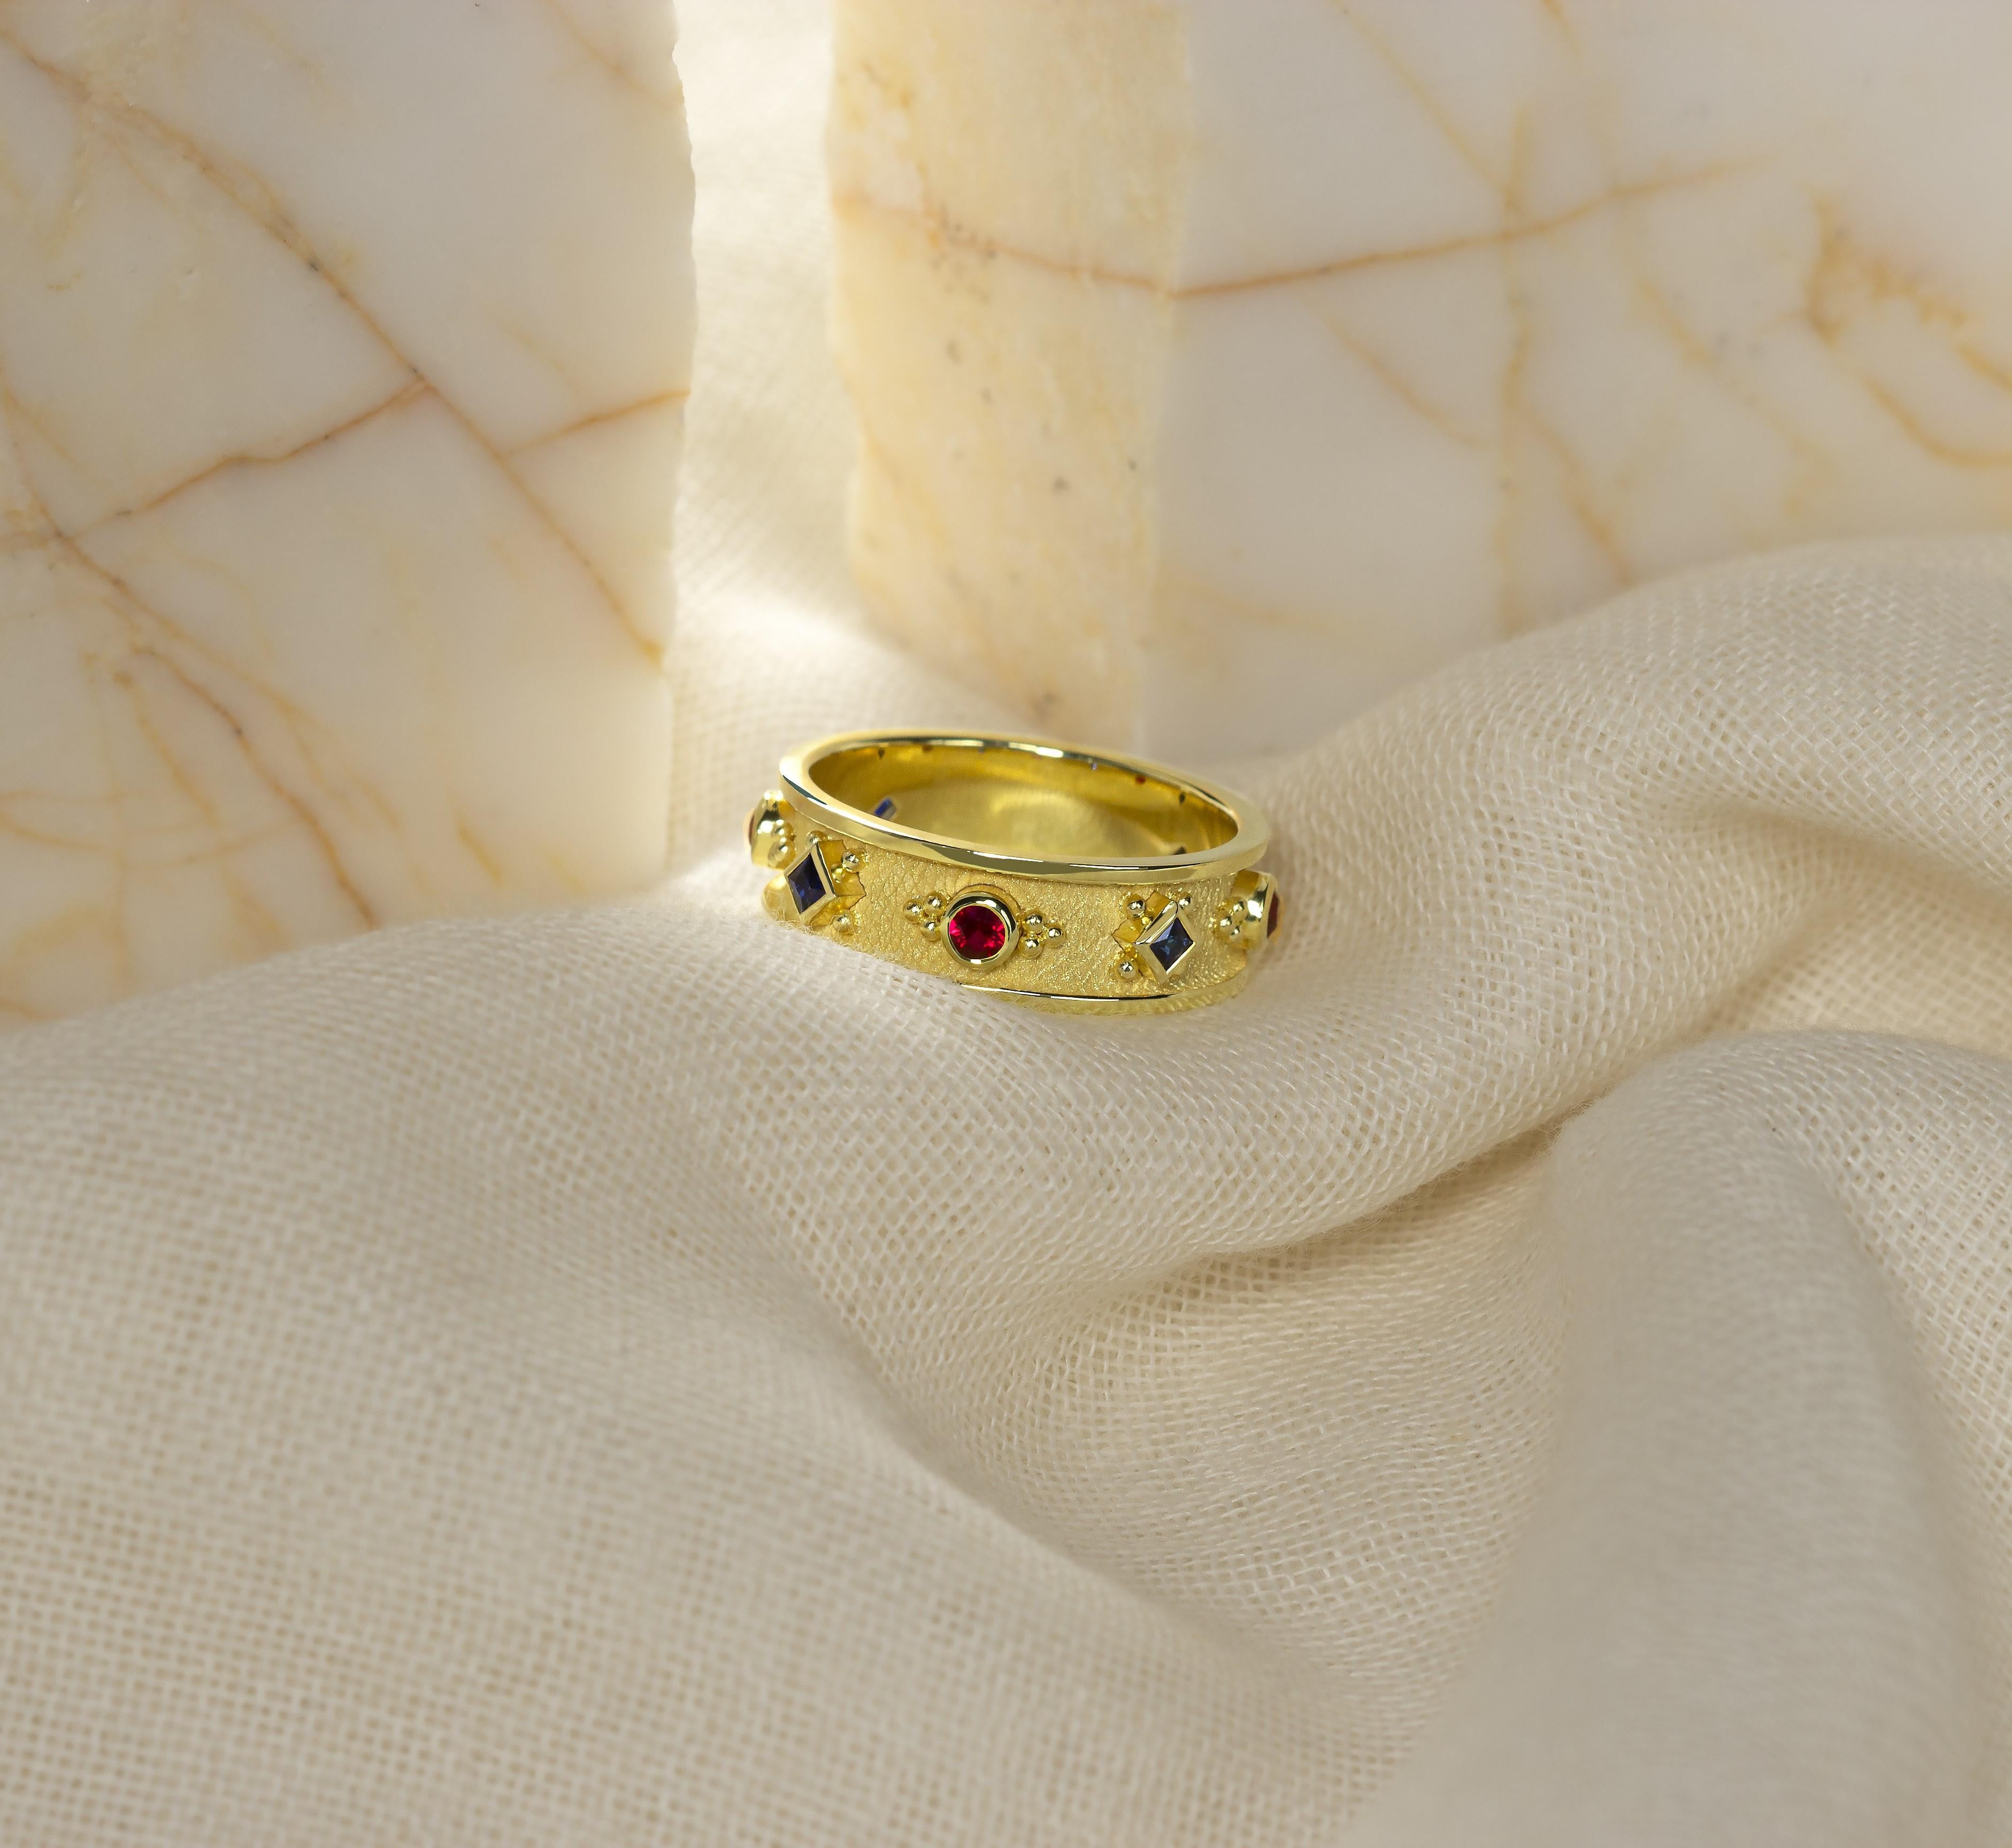 Dieser Goldring mit einer harmonischen Mischung aus strahlenden Rubinen und Saphiren verleiht Ihrem Finger exquisite Eleganz. Dieses zeitlose Stück fängt die Essenz der Raffinesse ein und ist damit eine perfekte Ergänzung für Ihre Sammlung.

100%